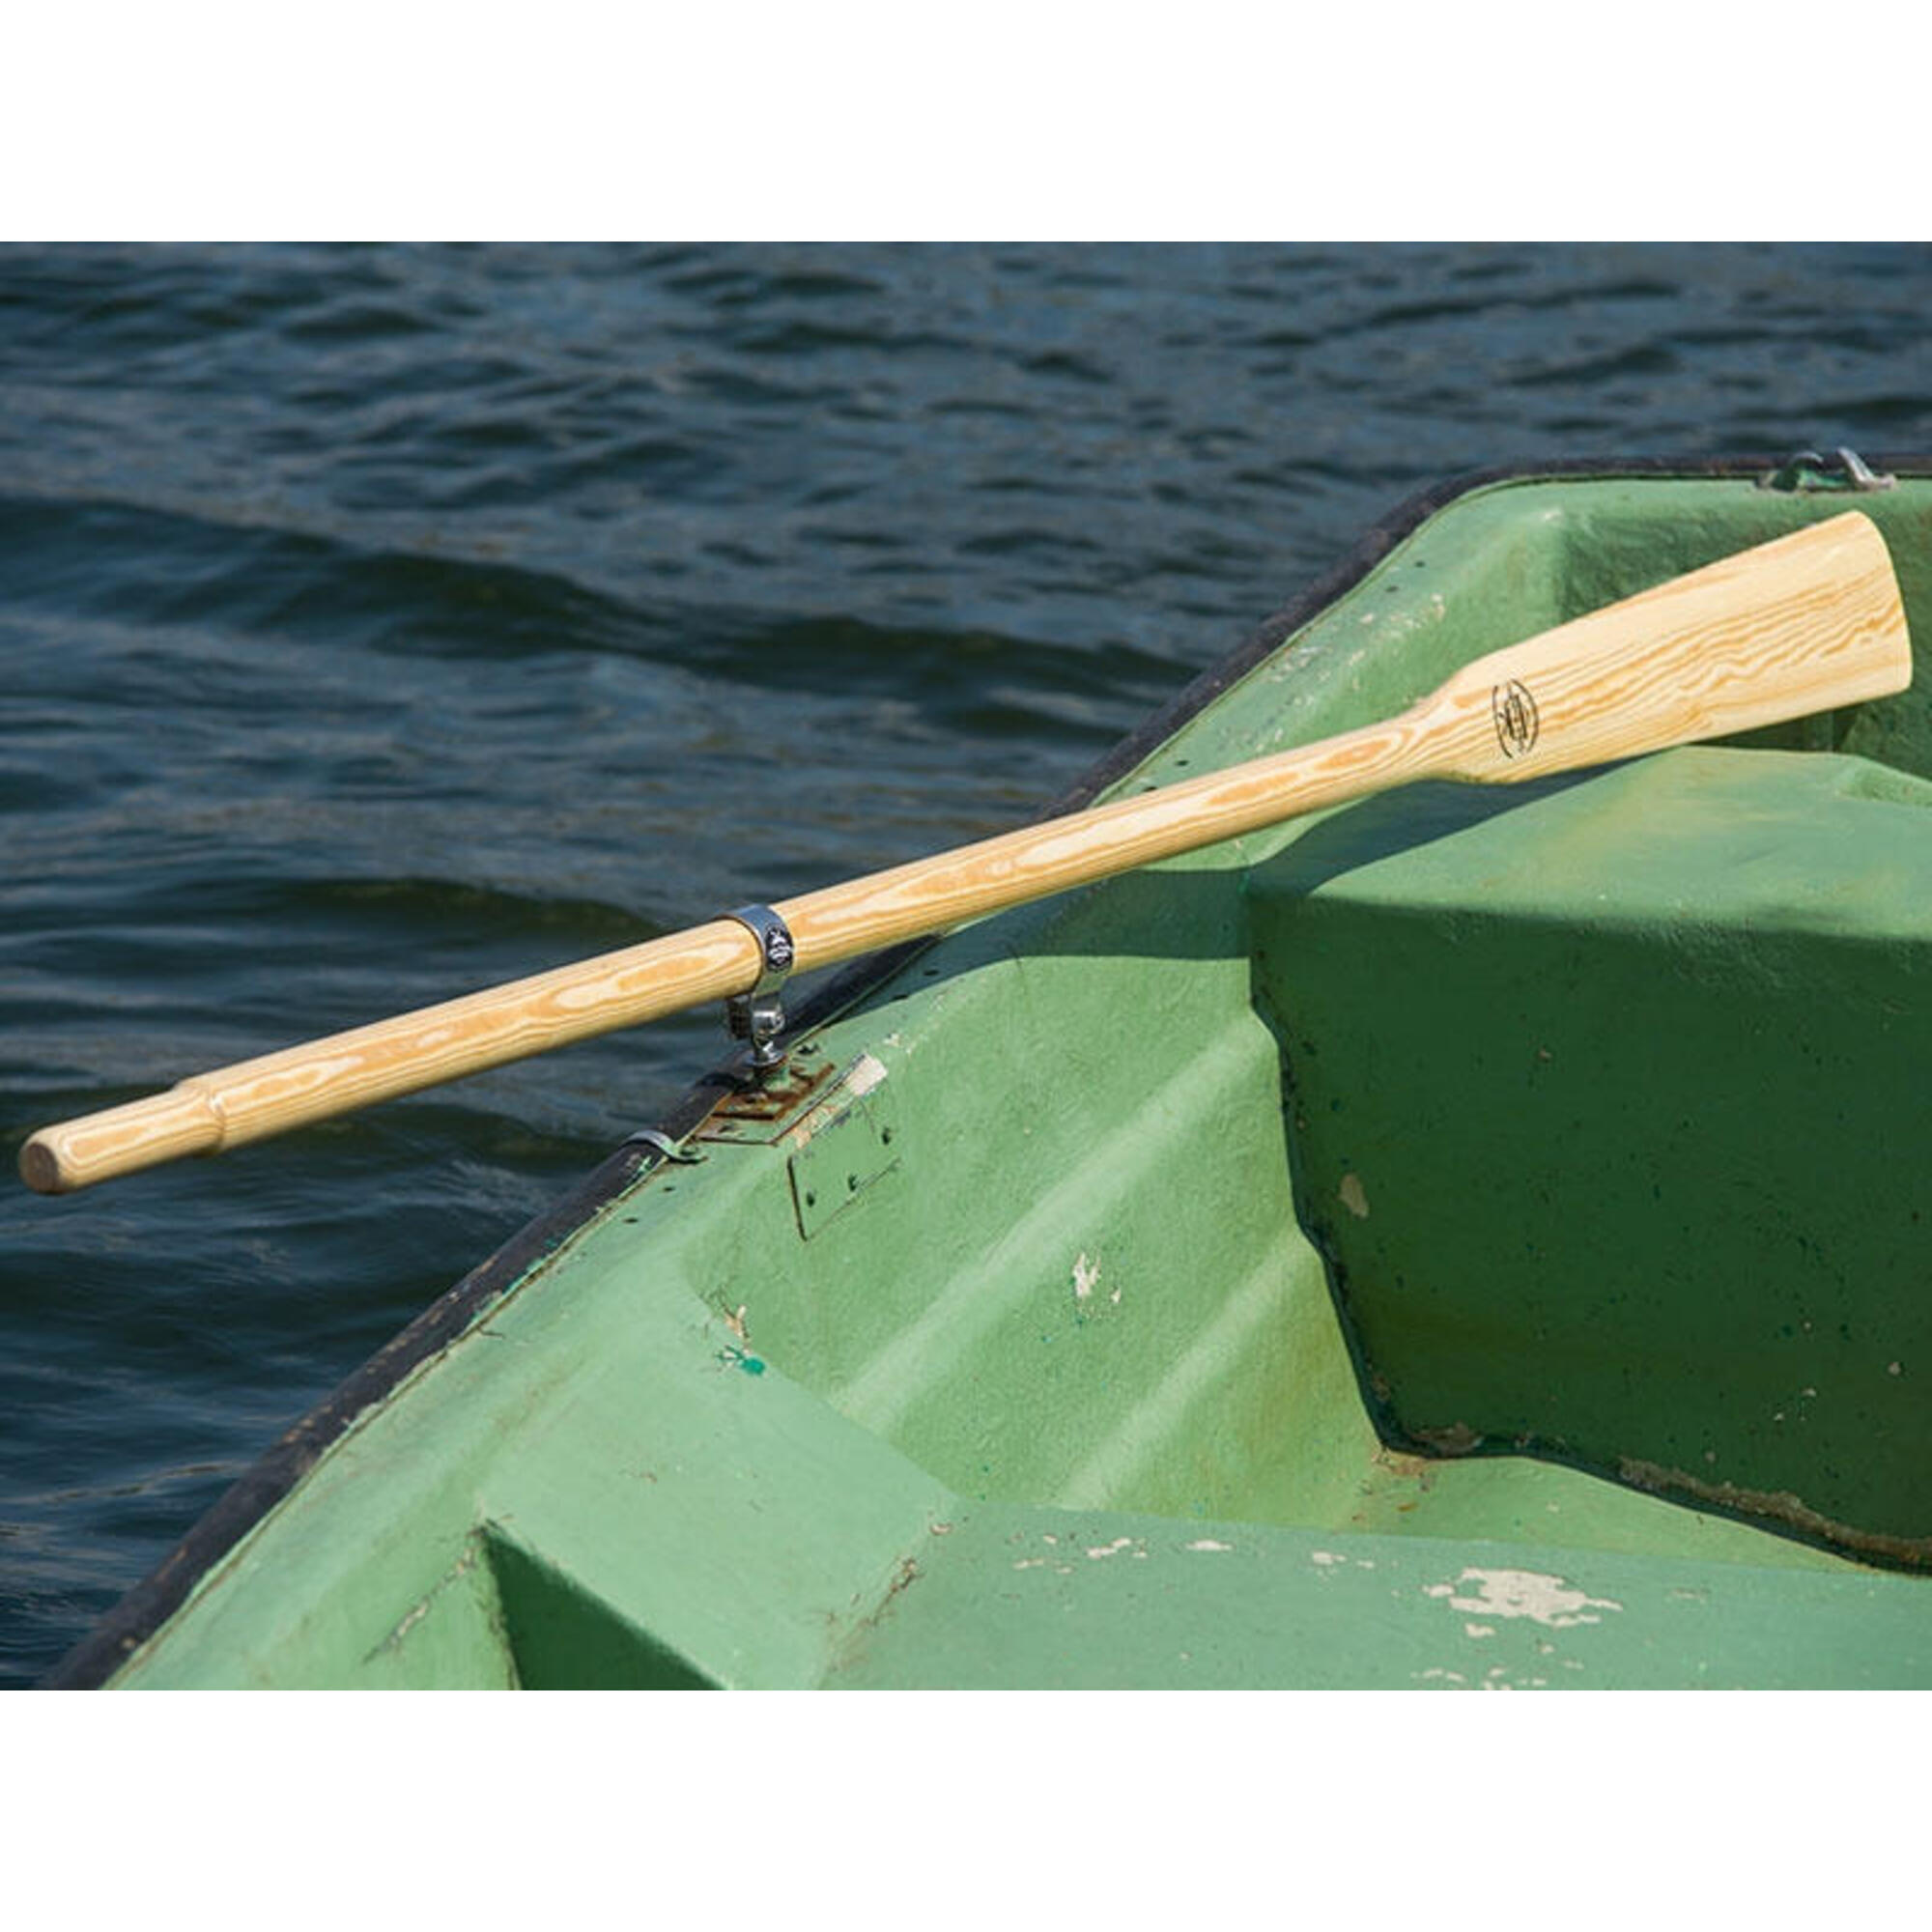 Wiosła szalupowe do łodzi + dulki pałąkowe + osłony 45mm John Paddle